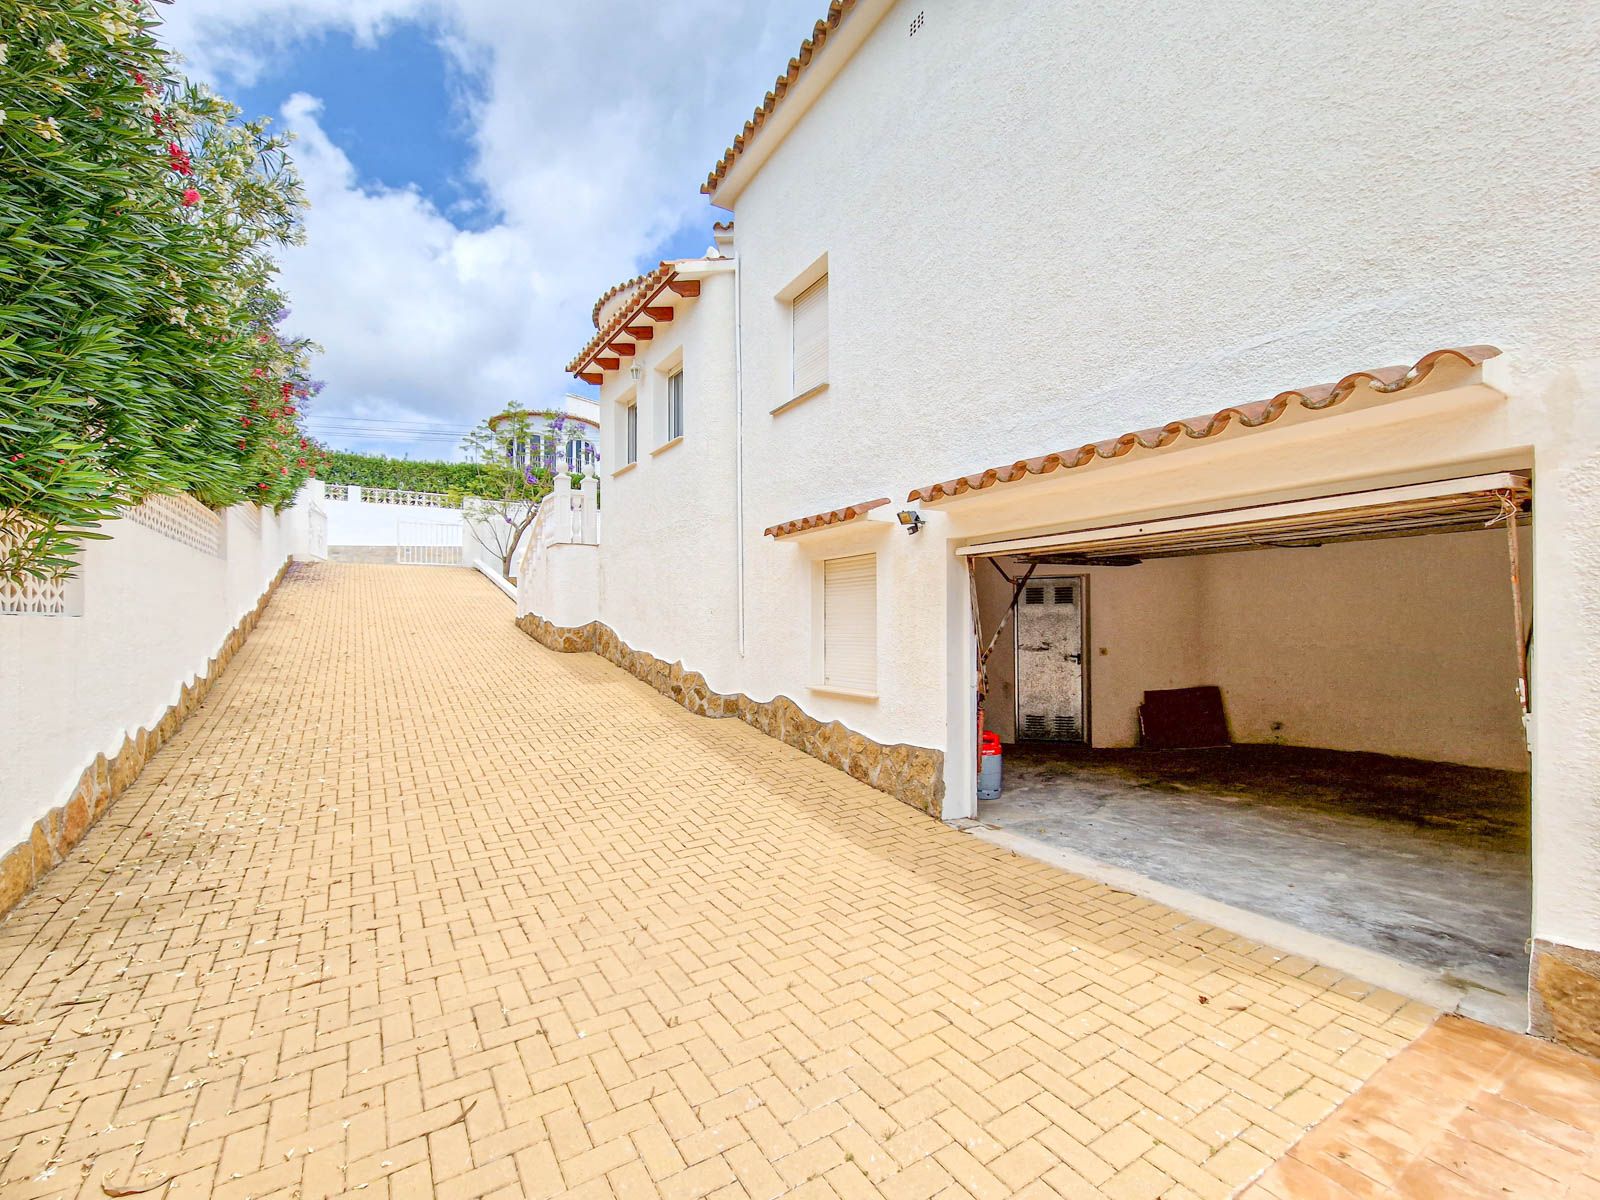 Renovated Ibizan style villa for sale in Costera del Mar Moraira, Costa Blanca